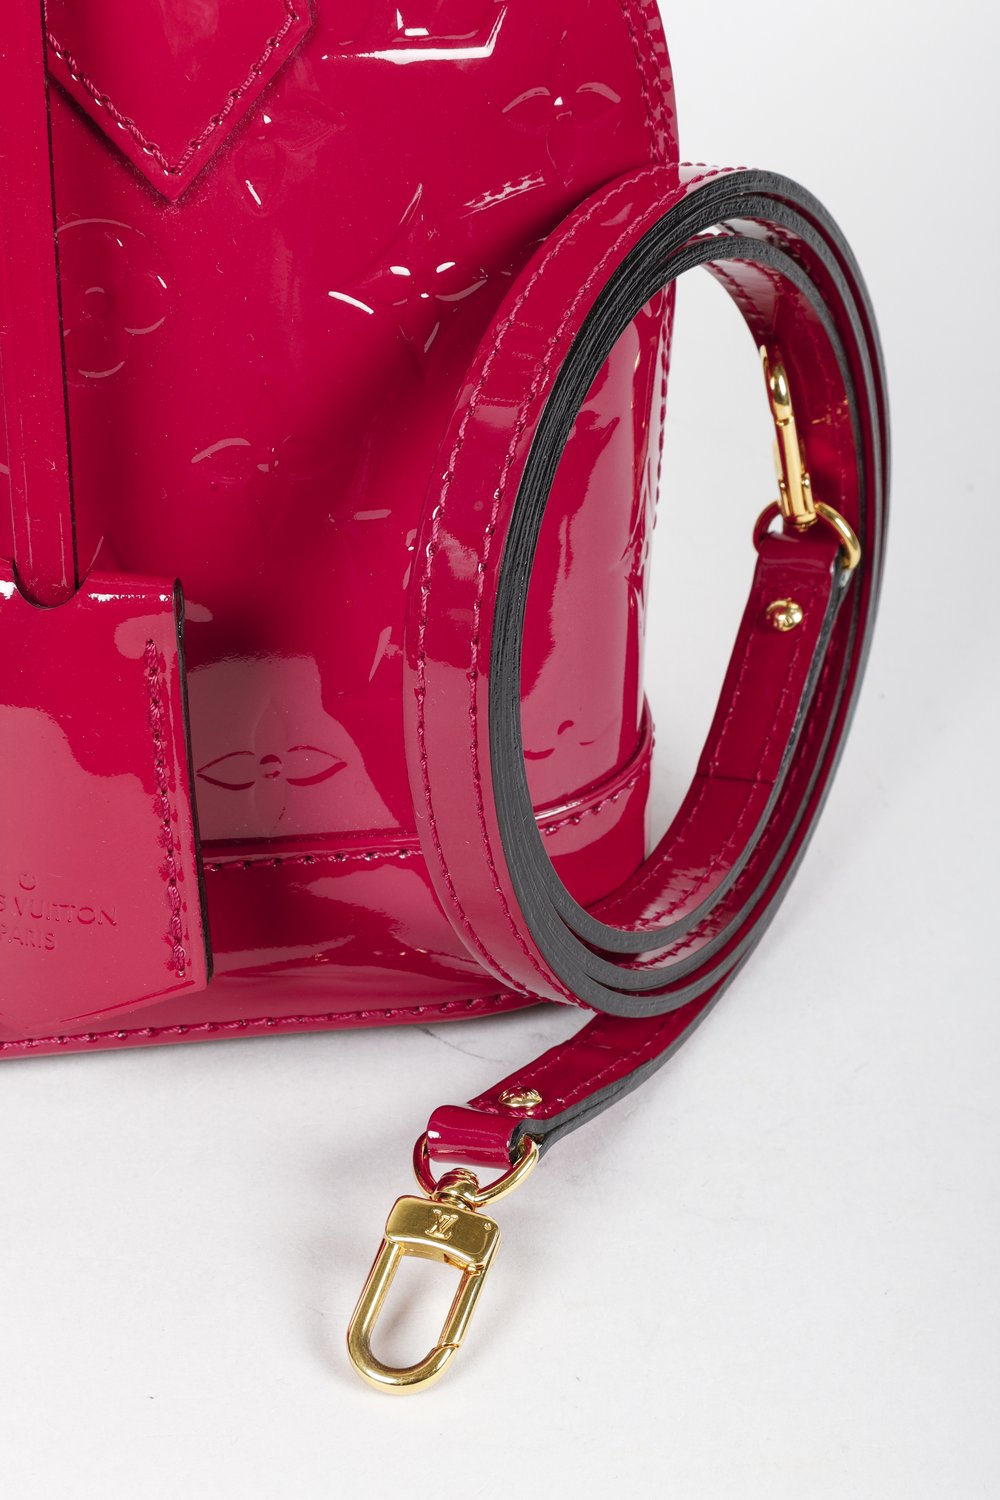 Louis Vuitton Alma BB Monogram Vernis Indian Rose Bag — BLOGGER